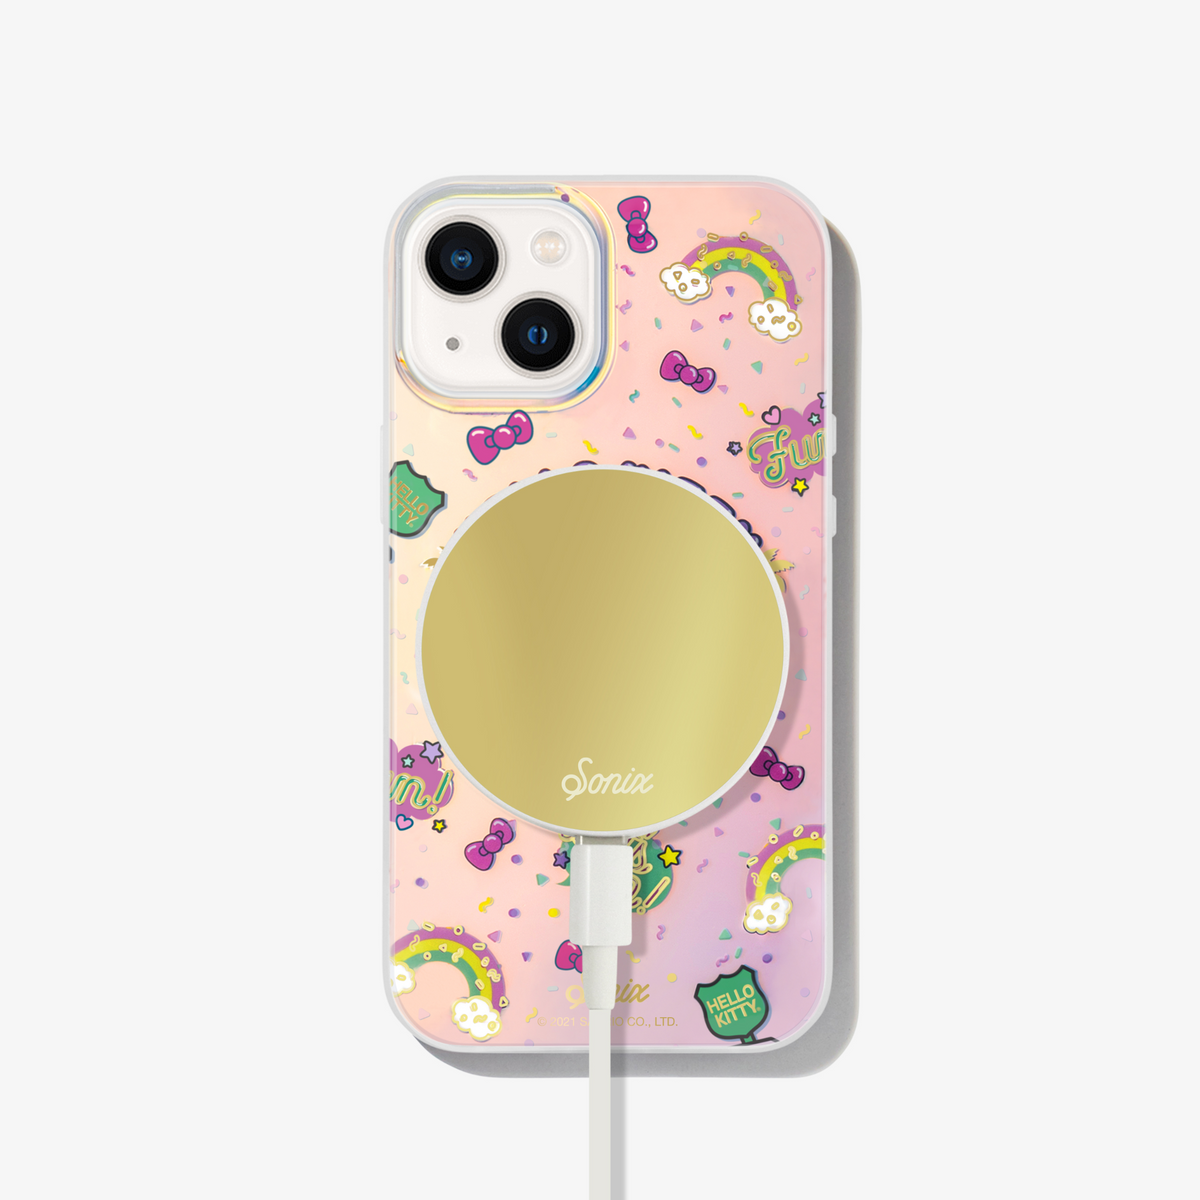 Louis Vuitton Hello Kitty iPhone 12 Mini, iPhone 12